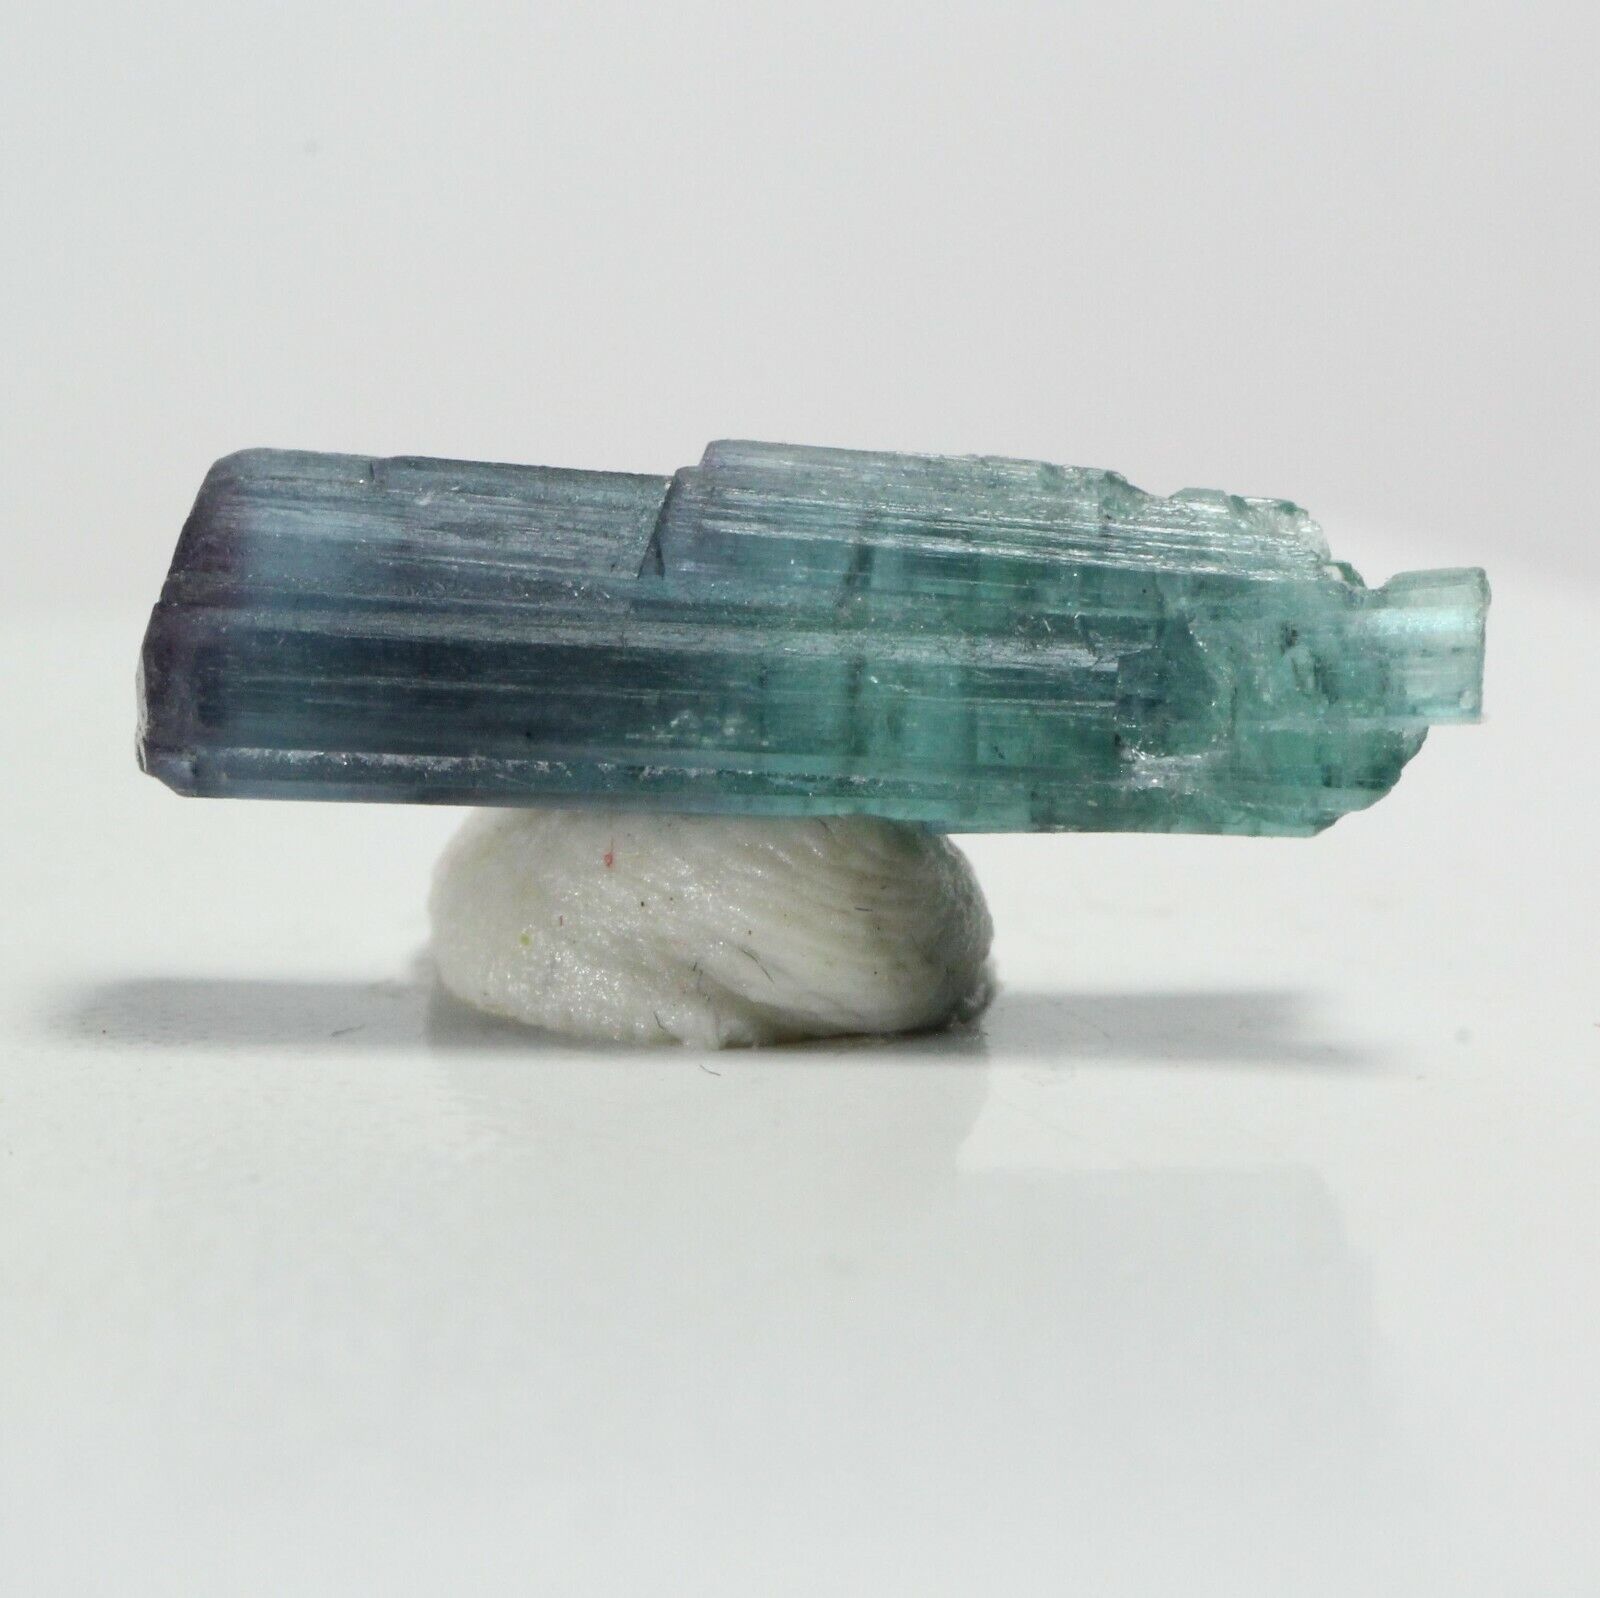 2.20ct Blue Tourmaline Crystal Gem Mineral Afghanistan Indicolite Indigolite D28